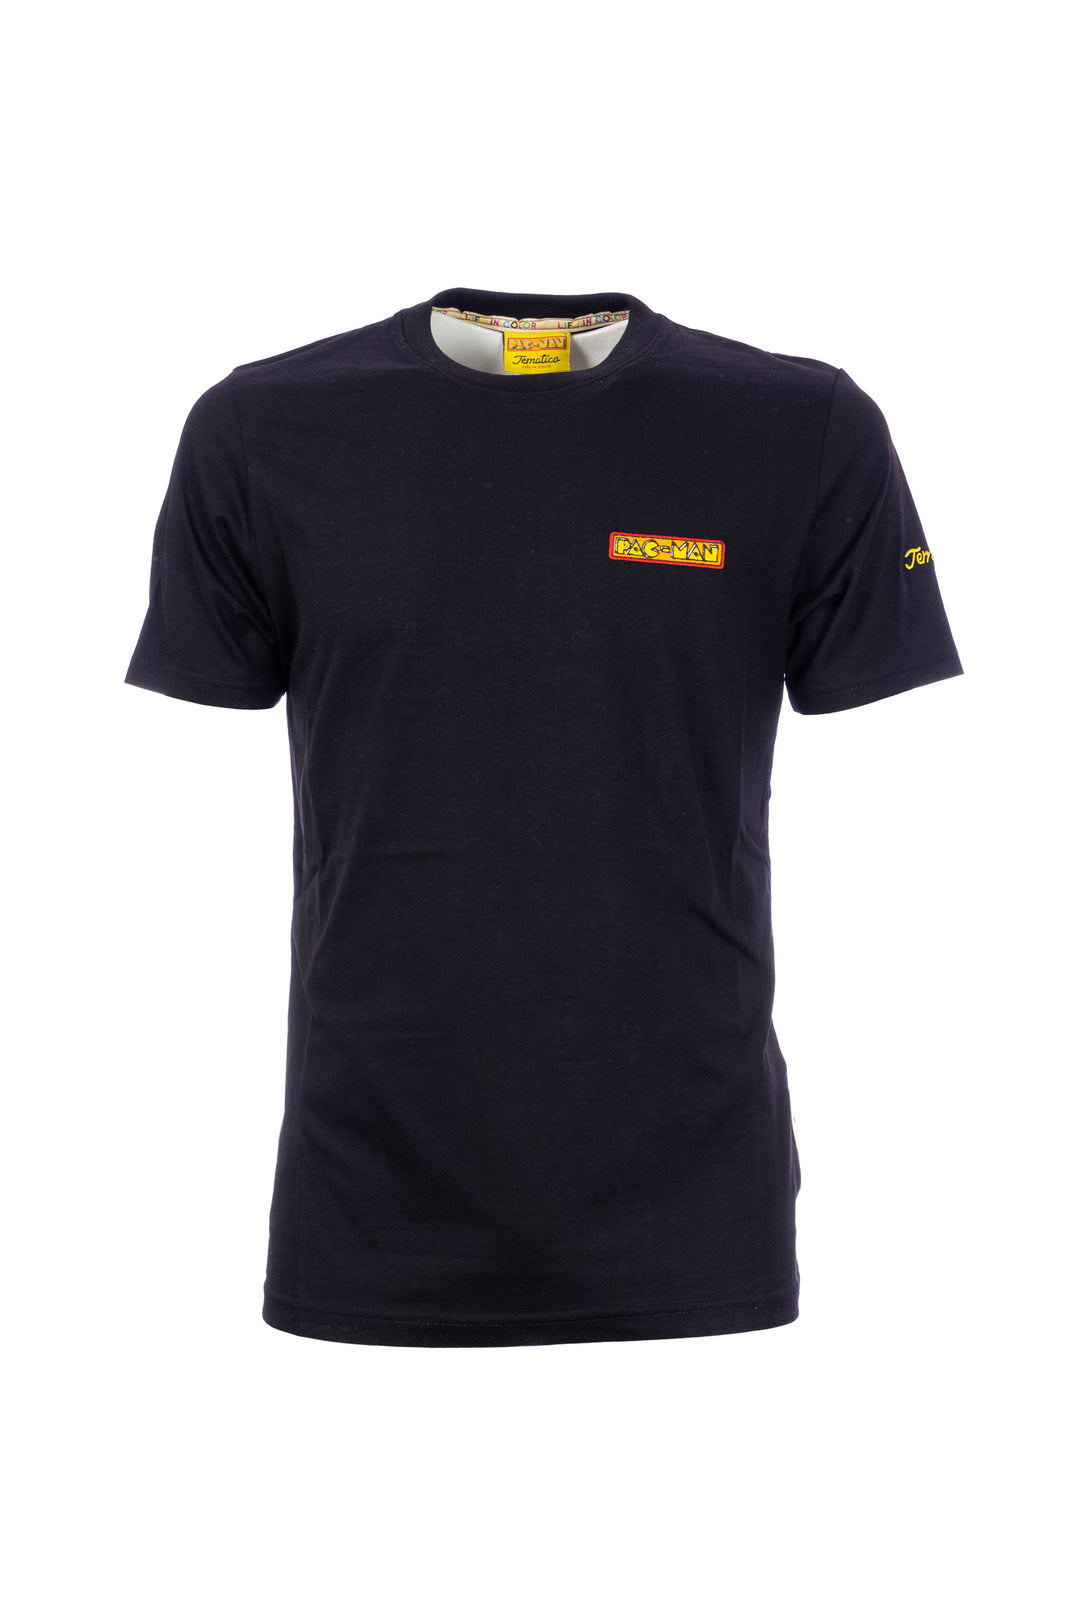 TEMATICO T-shirt nera in cotone con stampa Pac-Man sul petto e sulla schiena - Mancinelli 1954